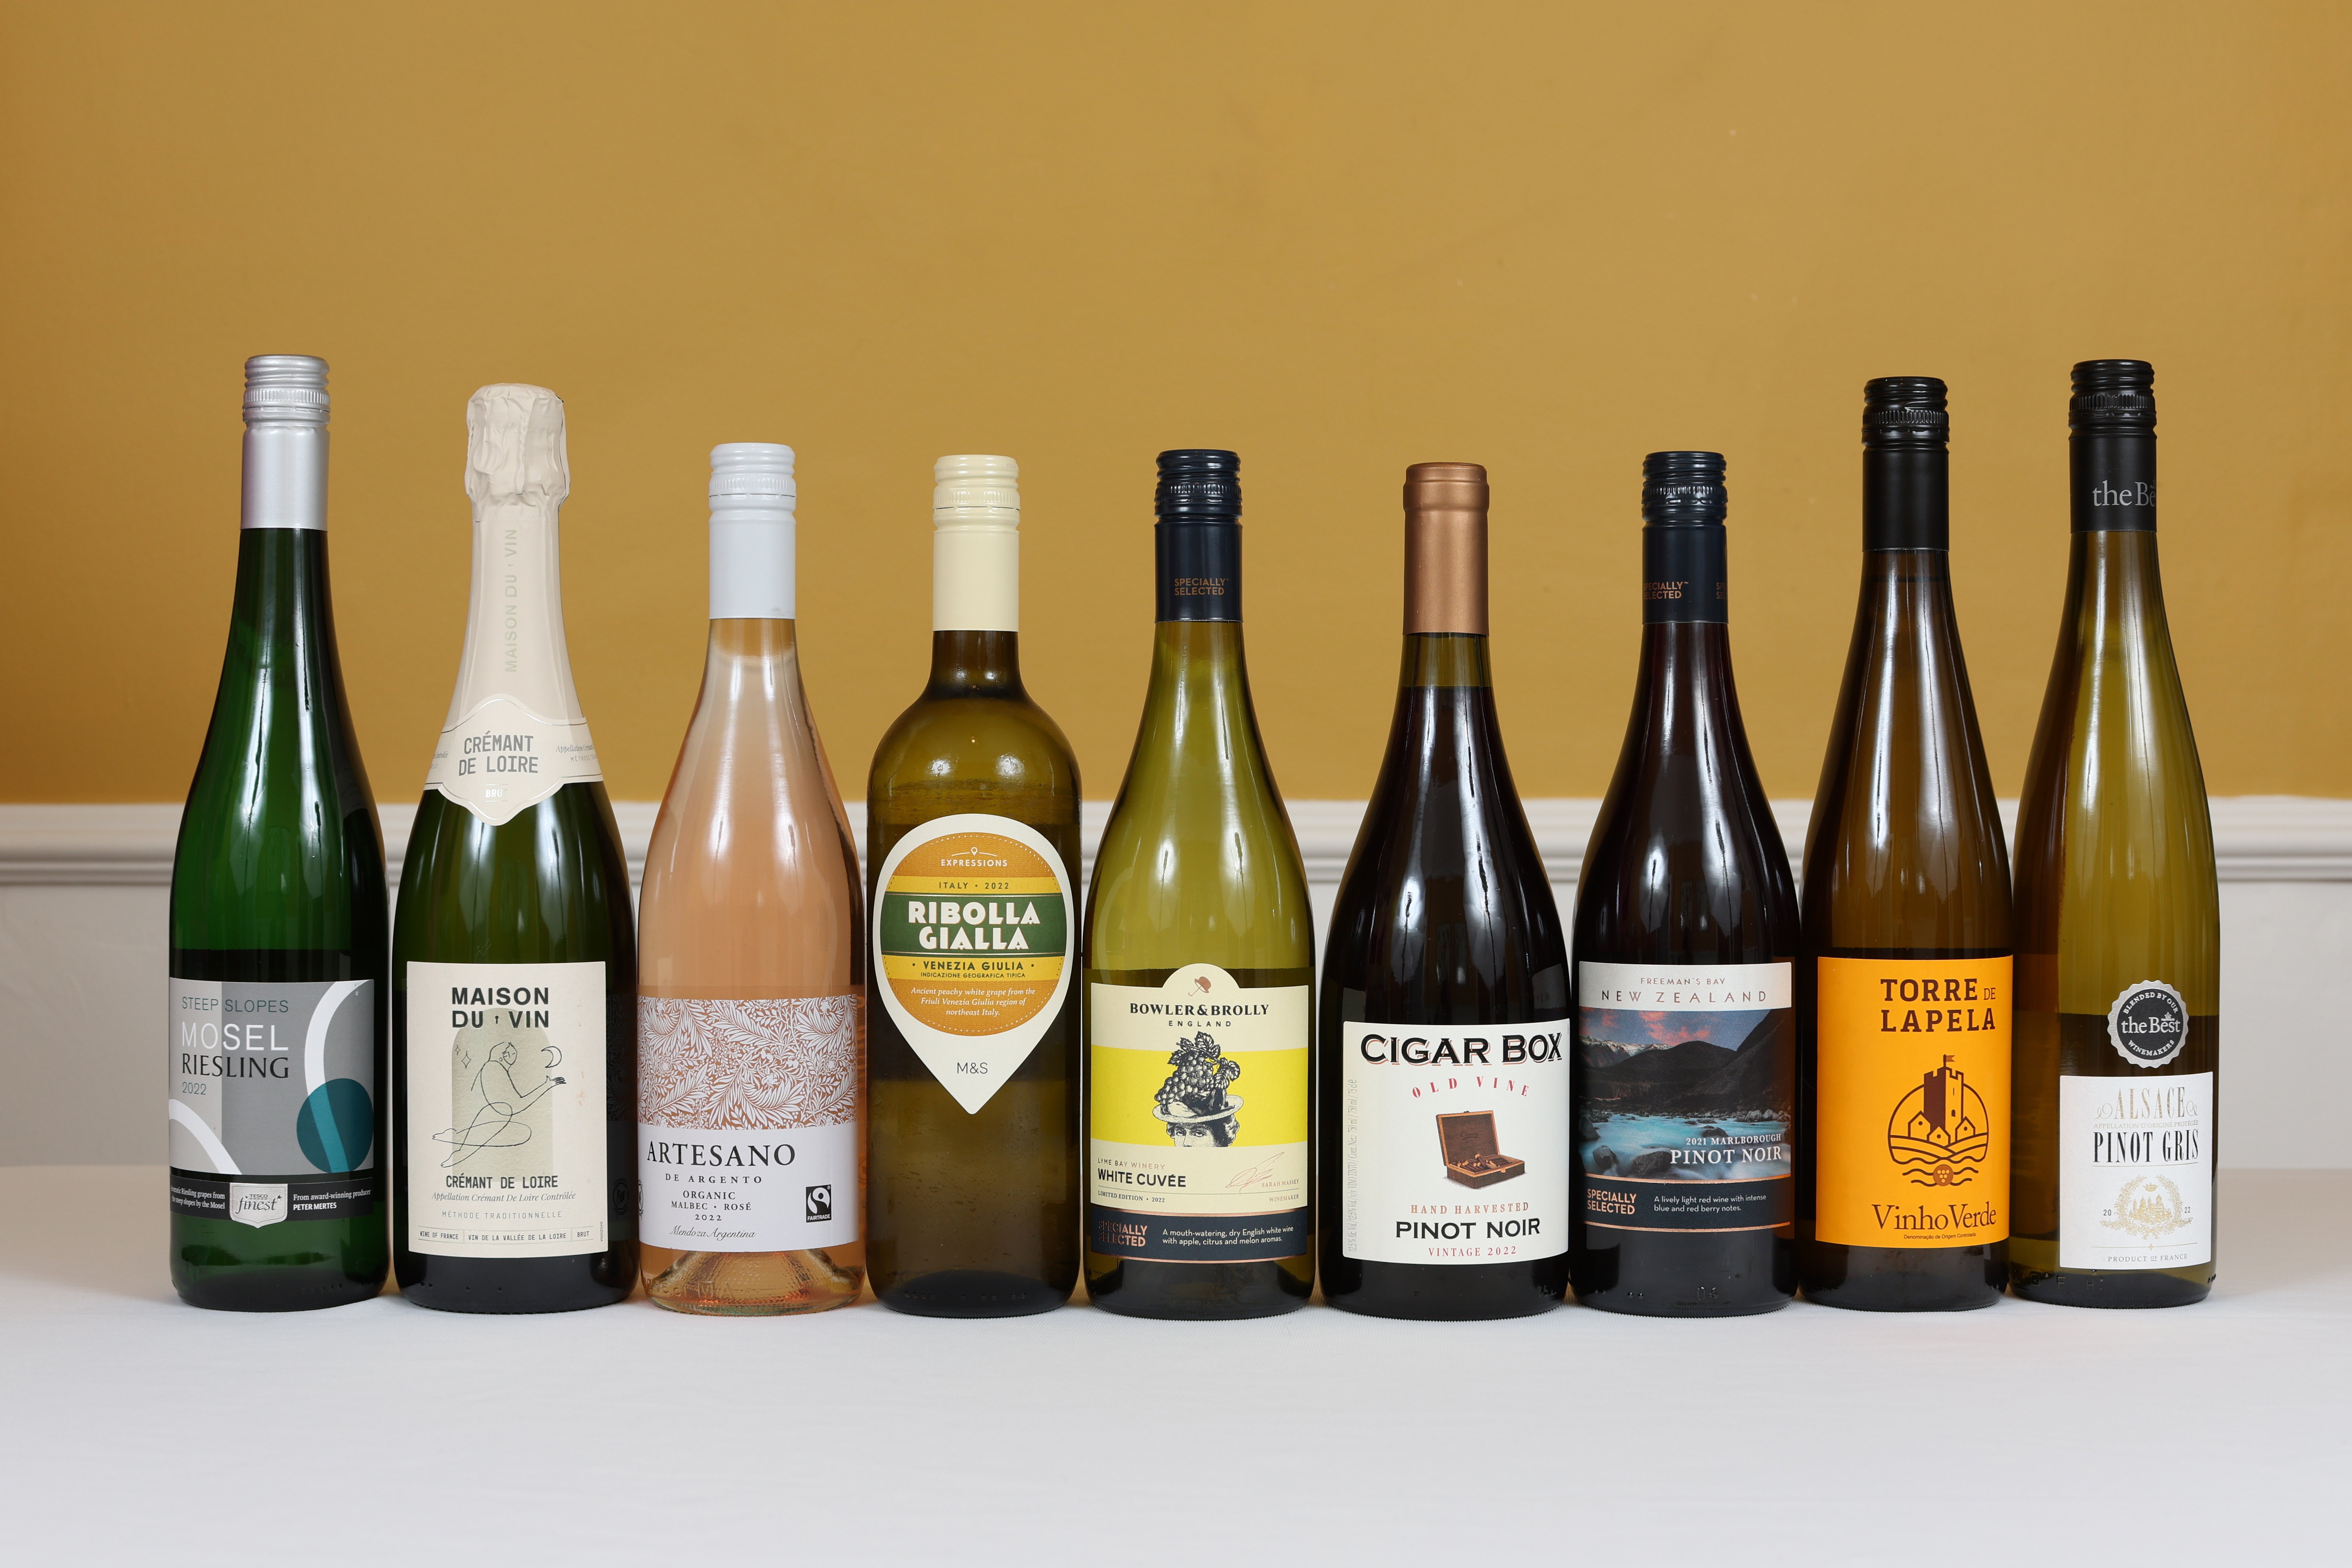 Weinliebhaber Alex stellte diese neun Supermarktkäufe auf die Probe, deren Preis zwischen 5,50 und 12 £ pro Flasche liegt